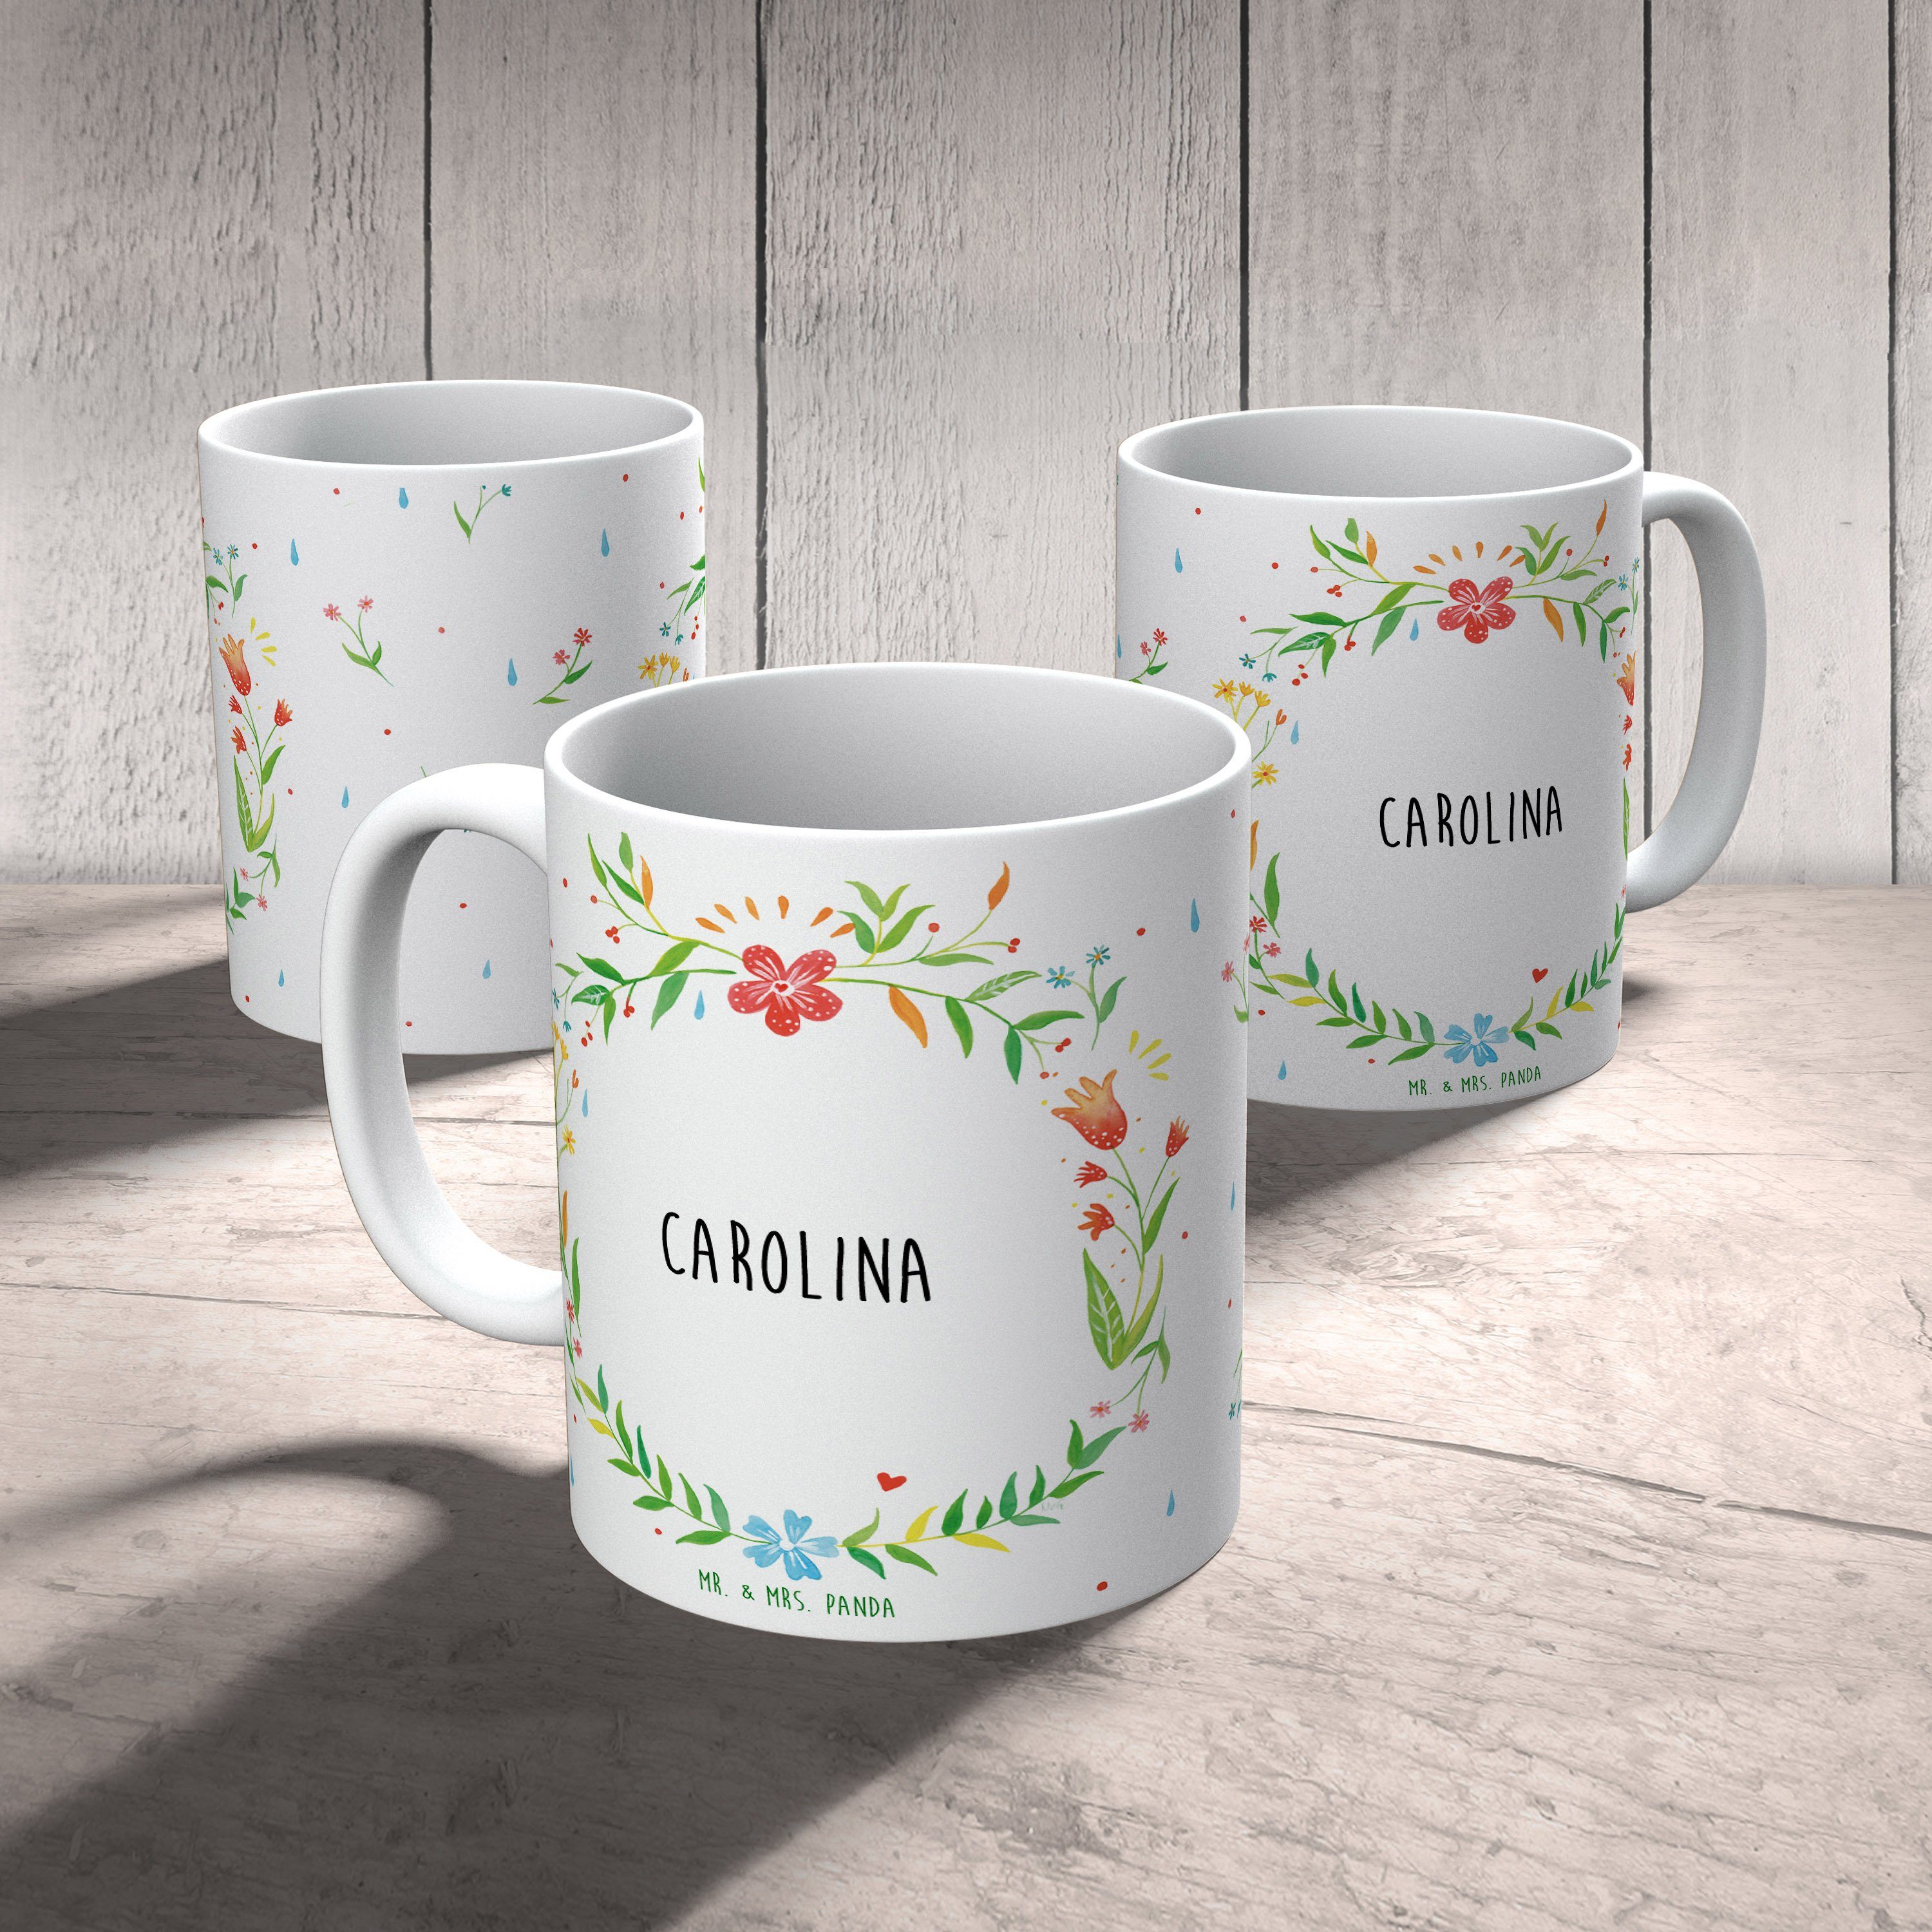 Mr. & Mrs. Panda Tasse Tasse Tee, Keramik Tasse, Motive, - Geschenk Tasse Geschenk, Sprüche, Carolina